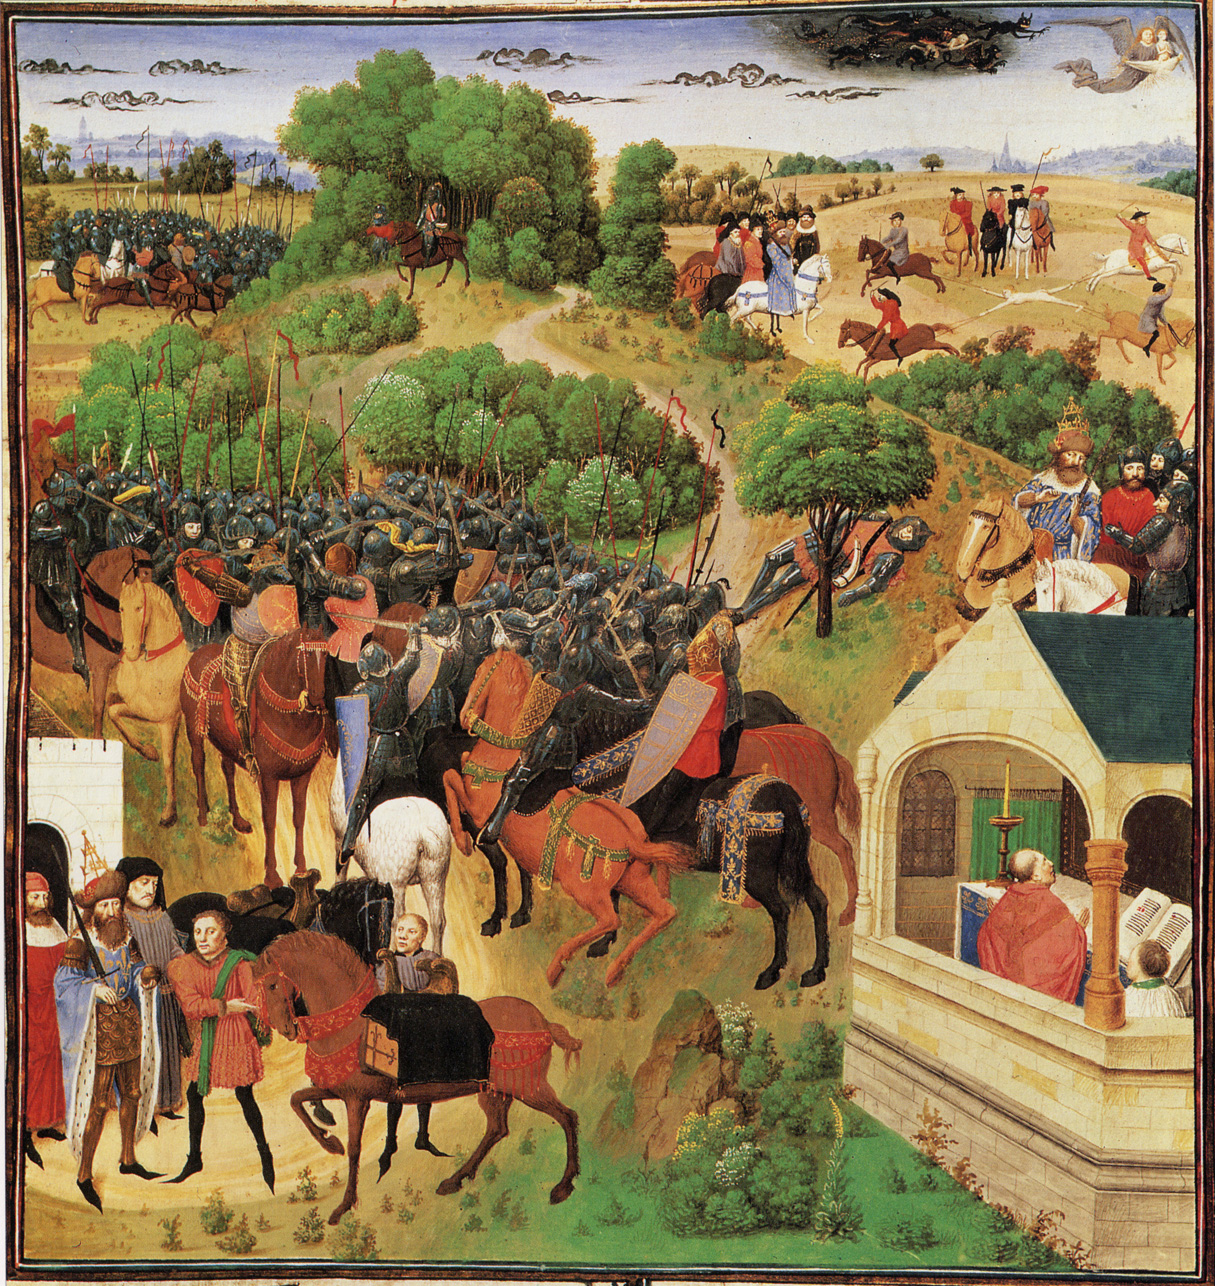 El Cantar de Roldán: Características y Análisis Detallado del Episodio Épico Medieval